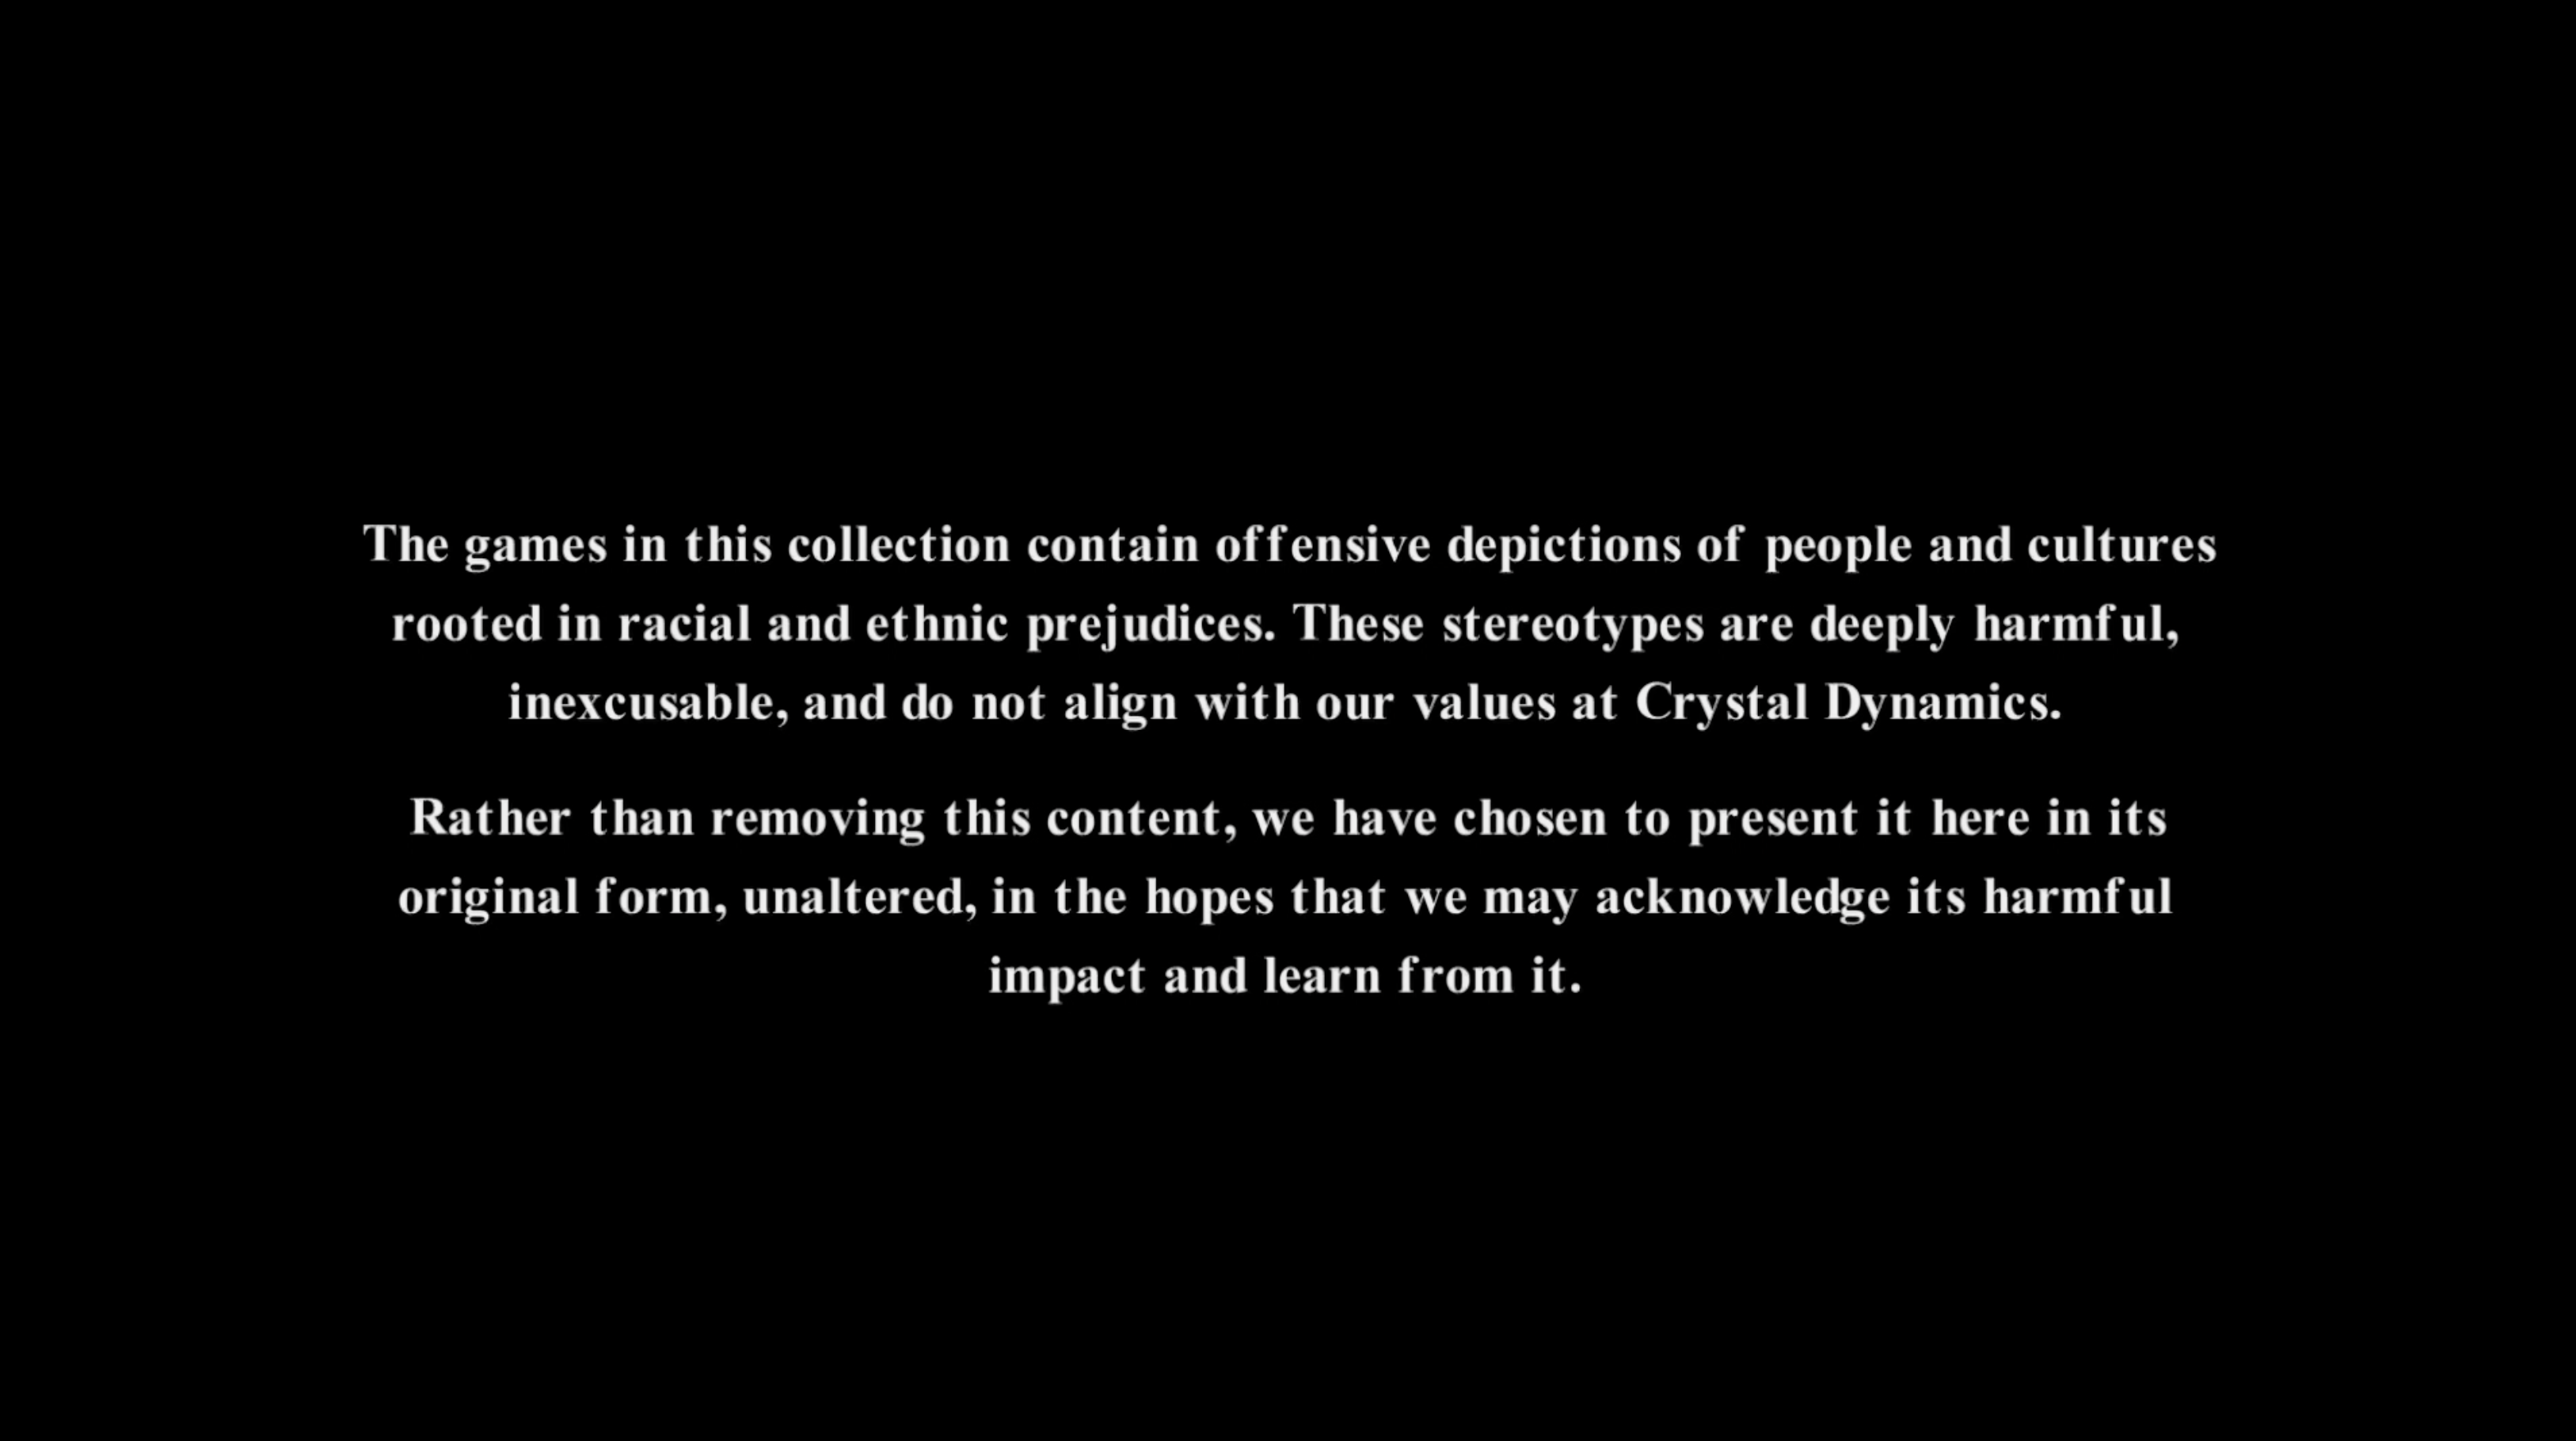 Advertencia de Crystal Dynamics añadida a la discusión de Tomb Raider 1-3 Remastered sobre el contenido ofensivo del juego